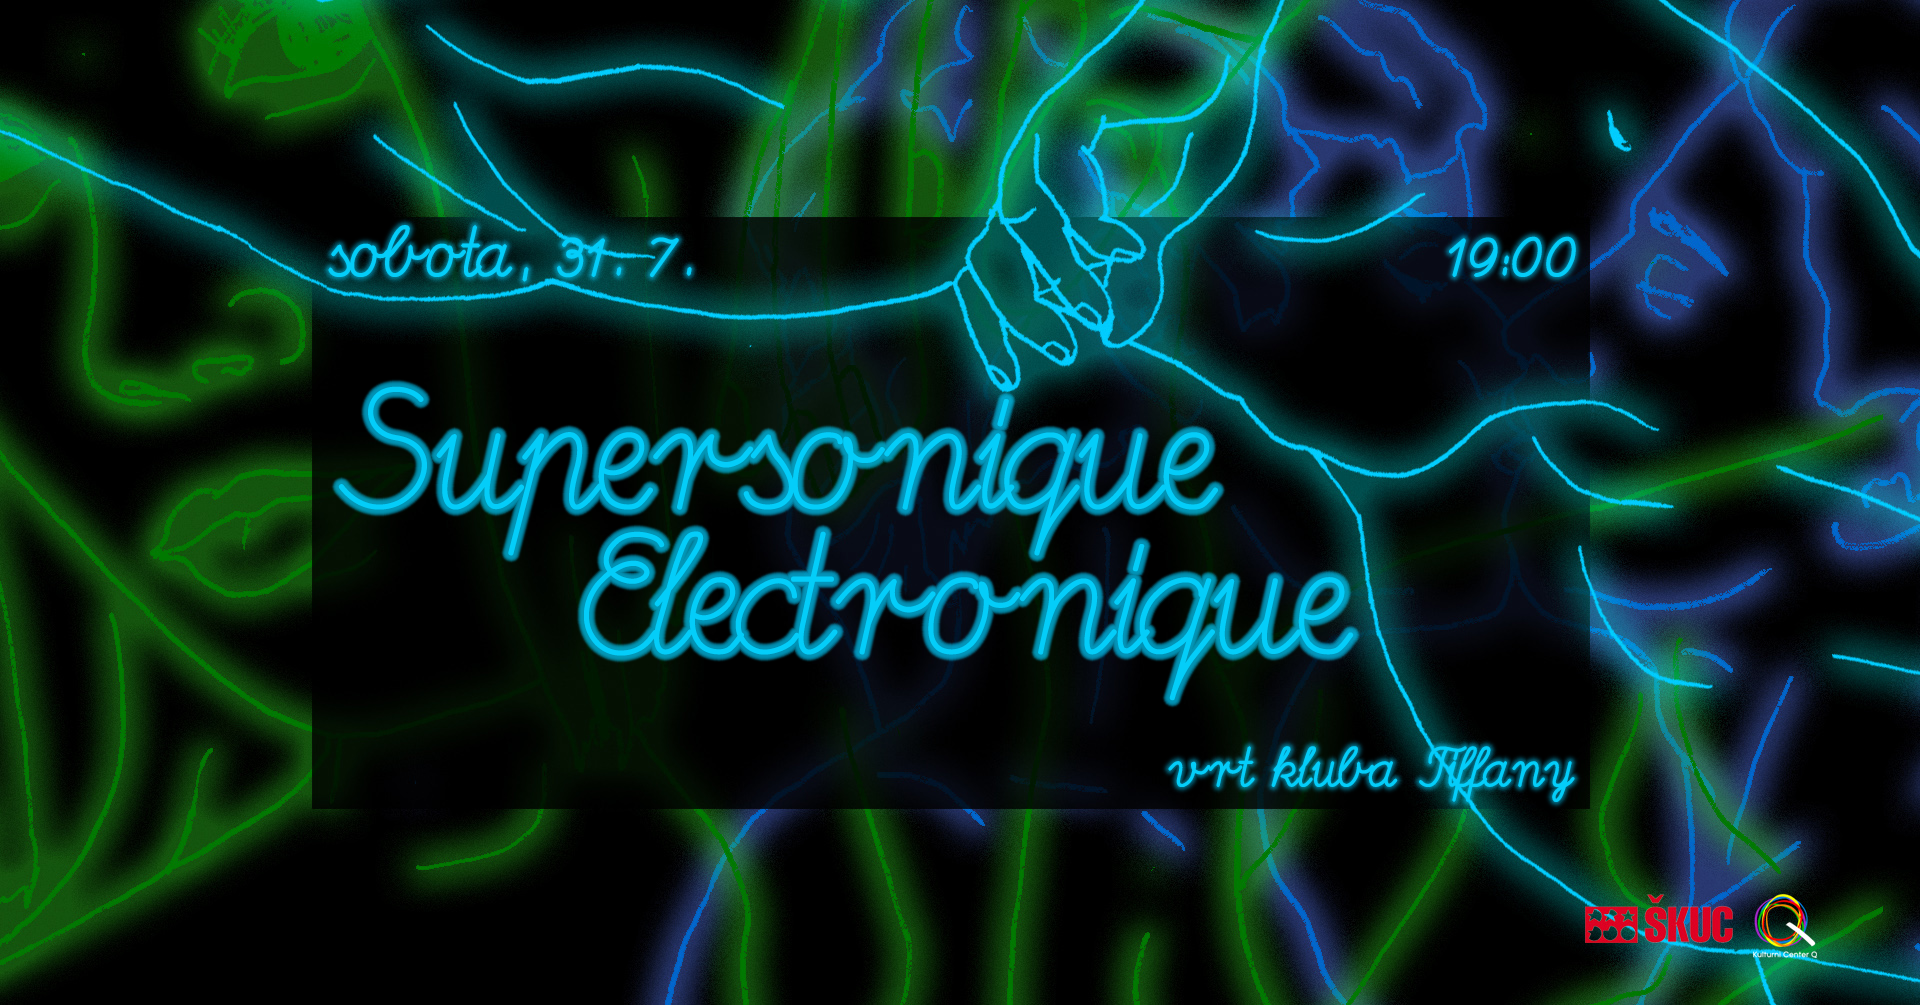 supersonique electronique 31.7